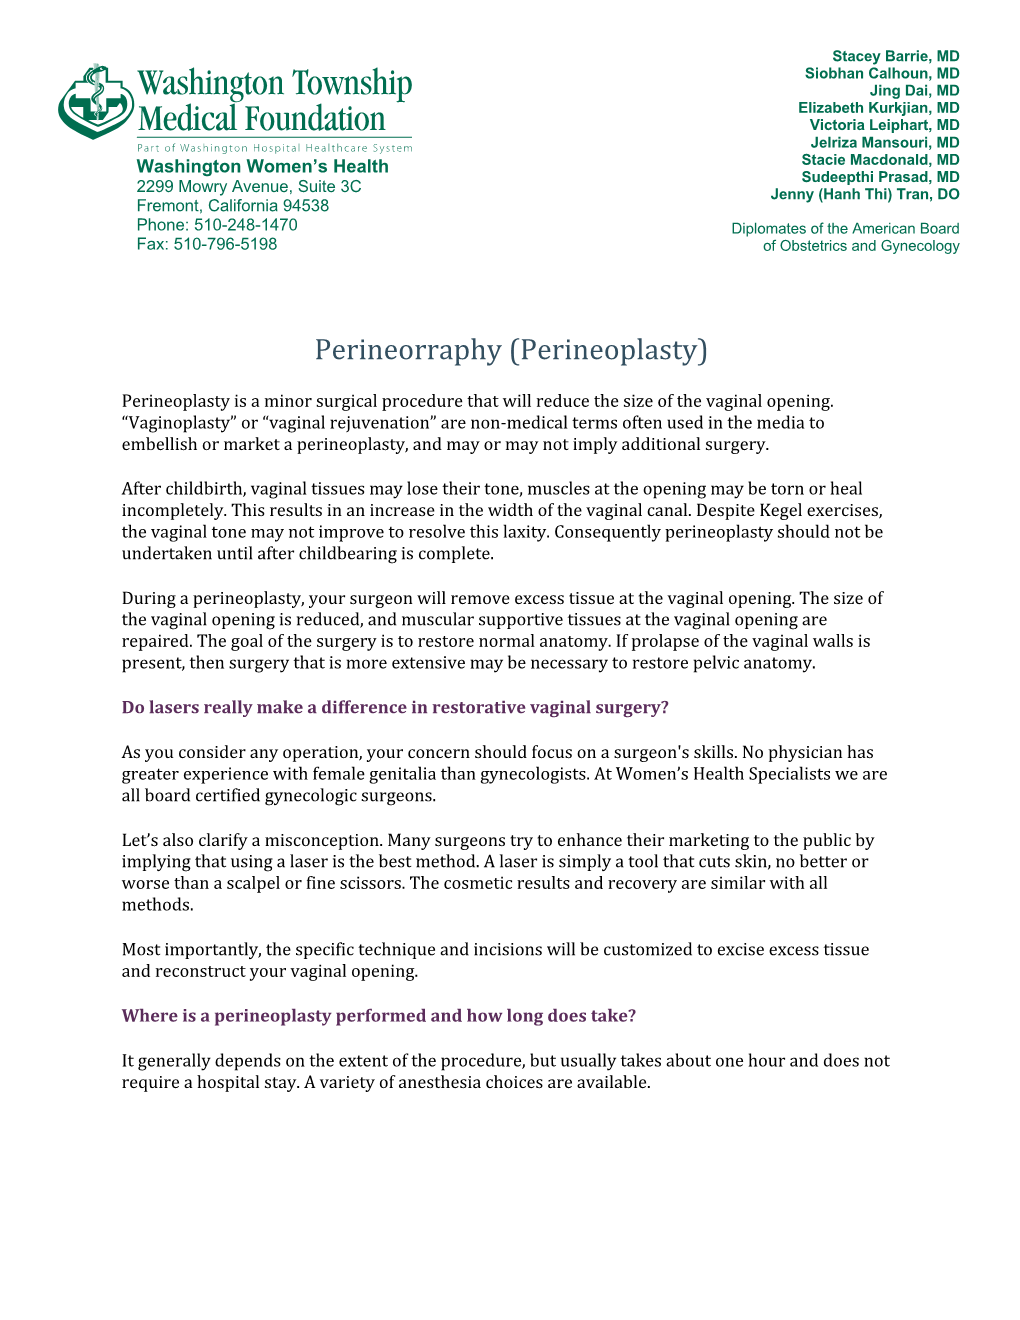 Perineorraphy (Perineoplasty)